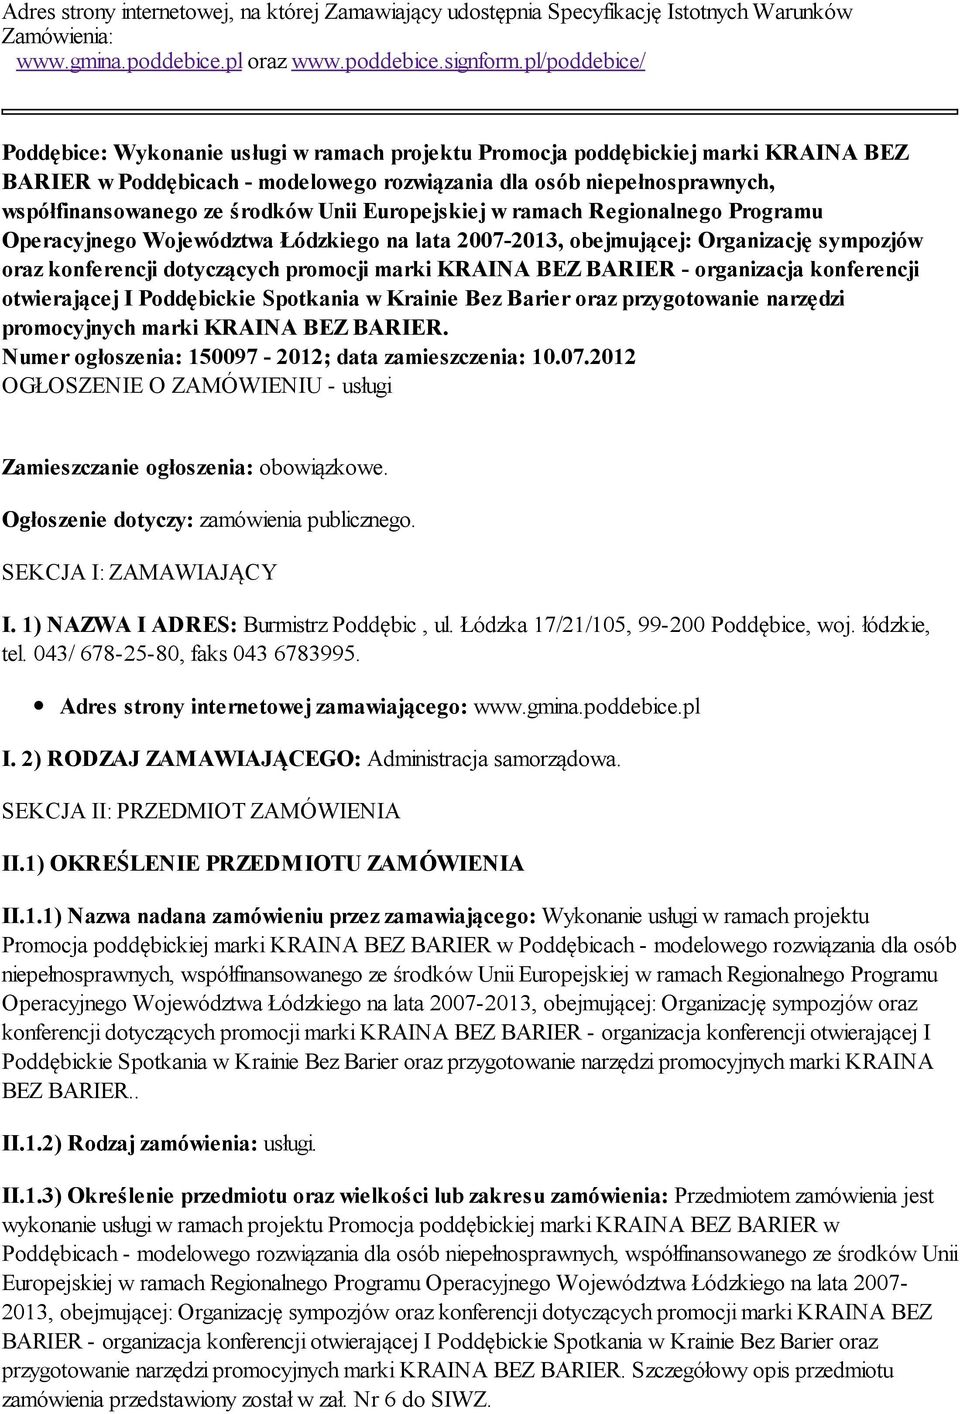 środków Unii Europejskiej w ramach Regionalnego Programu Operacyjnego Województwa Łódzkiego na lata 2007-2013, obejmującej: Organizację sympozjów oraz konferencji dotyczących promocji marki KRAINA